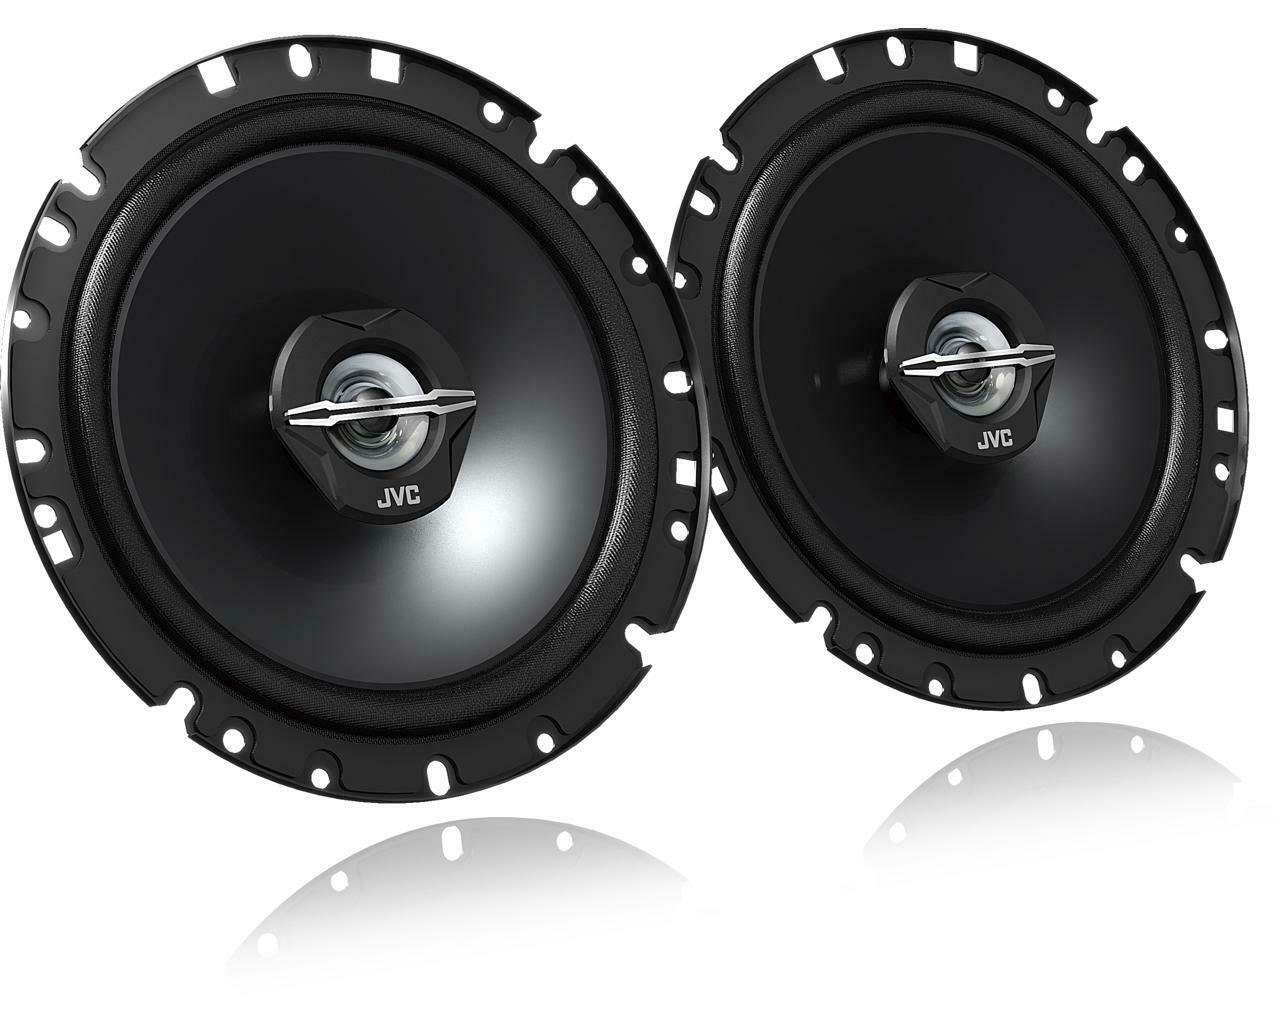 passend DSX 96 für Lautspreche - Ka (30 JVC Ford 300 08 Auto-Lautsprecher W) W